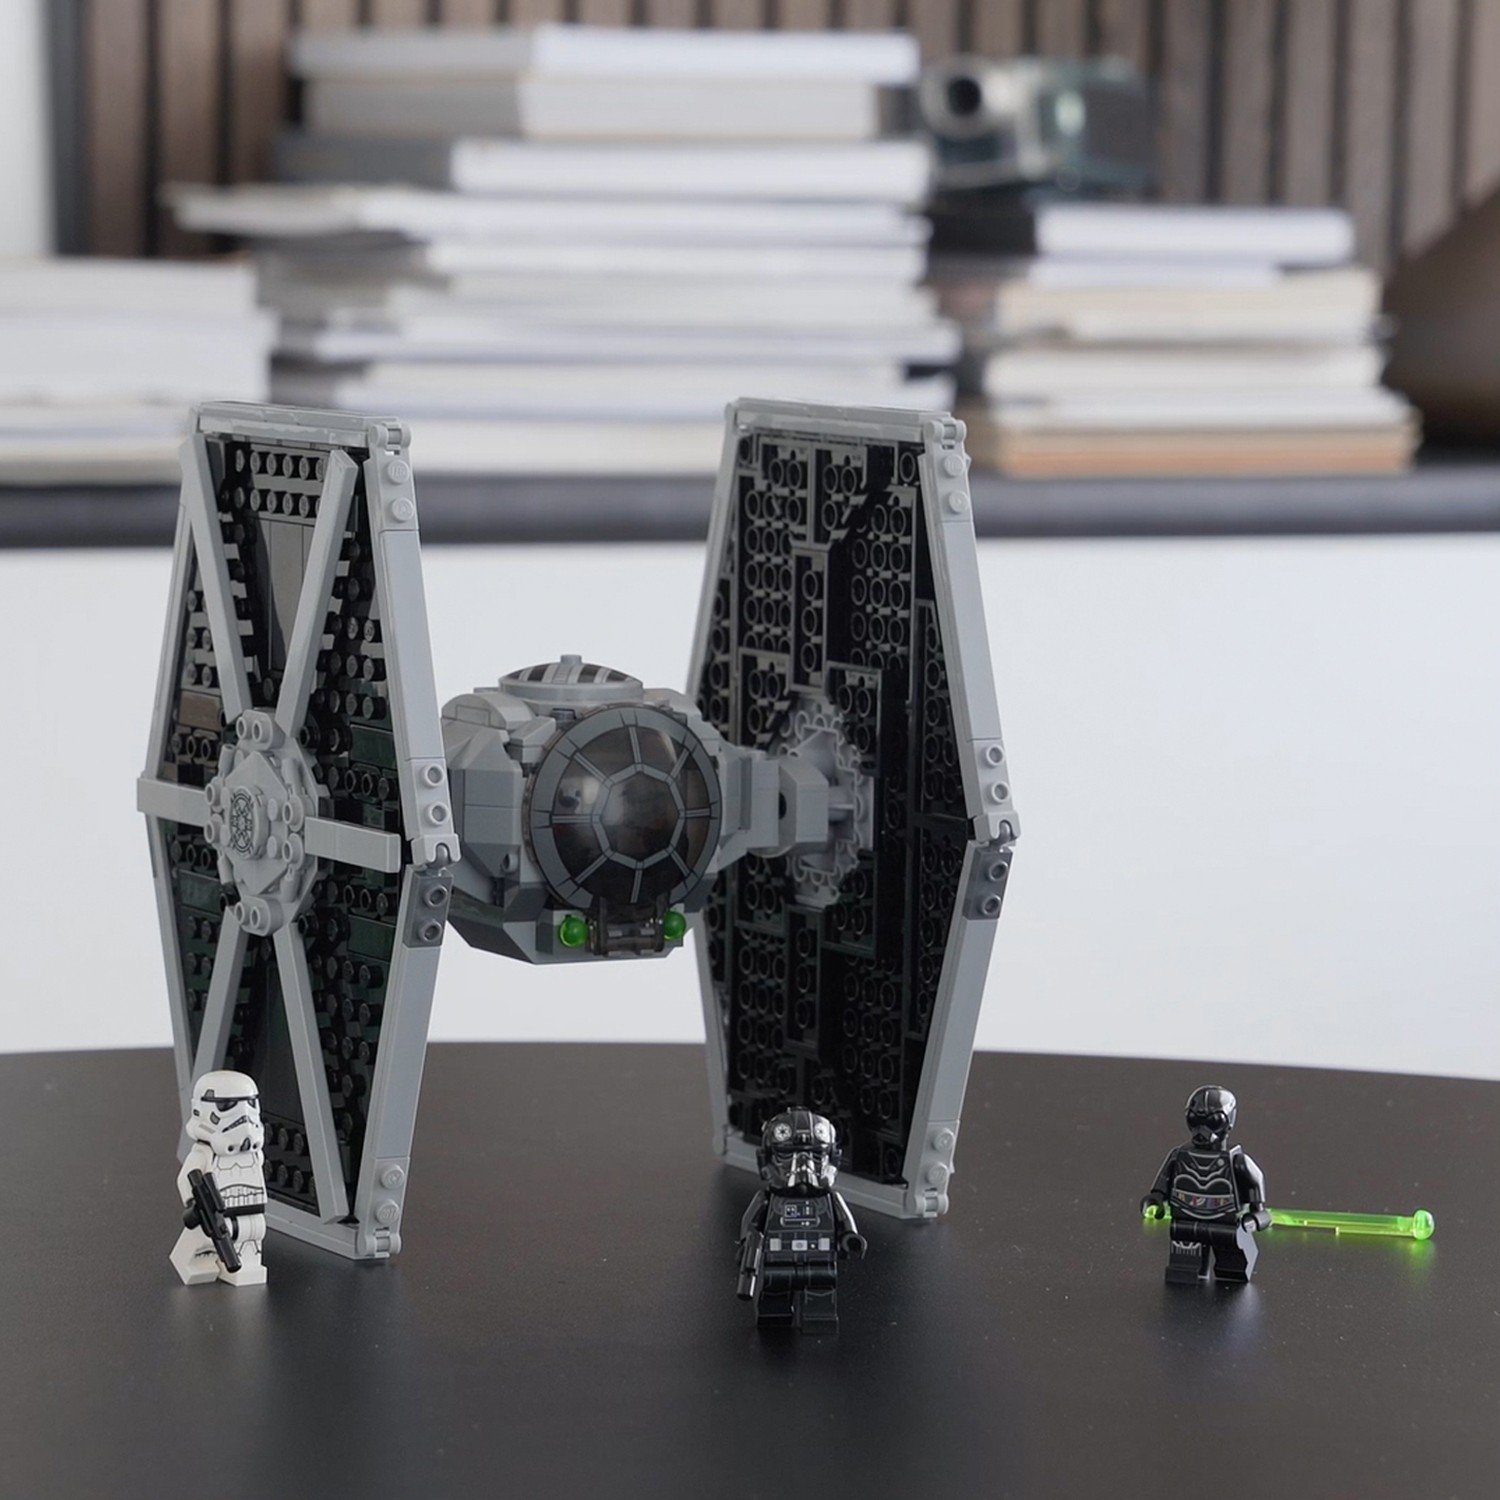 Lego Star Wars 75300 Имперский истребитель СИД